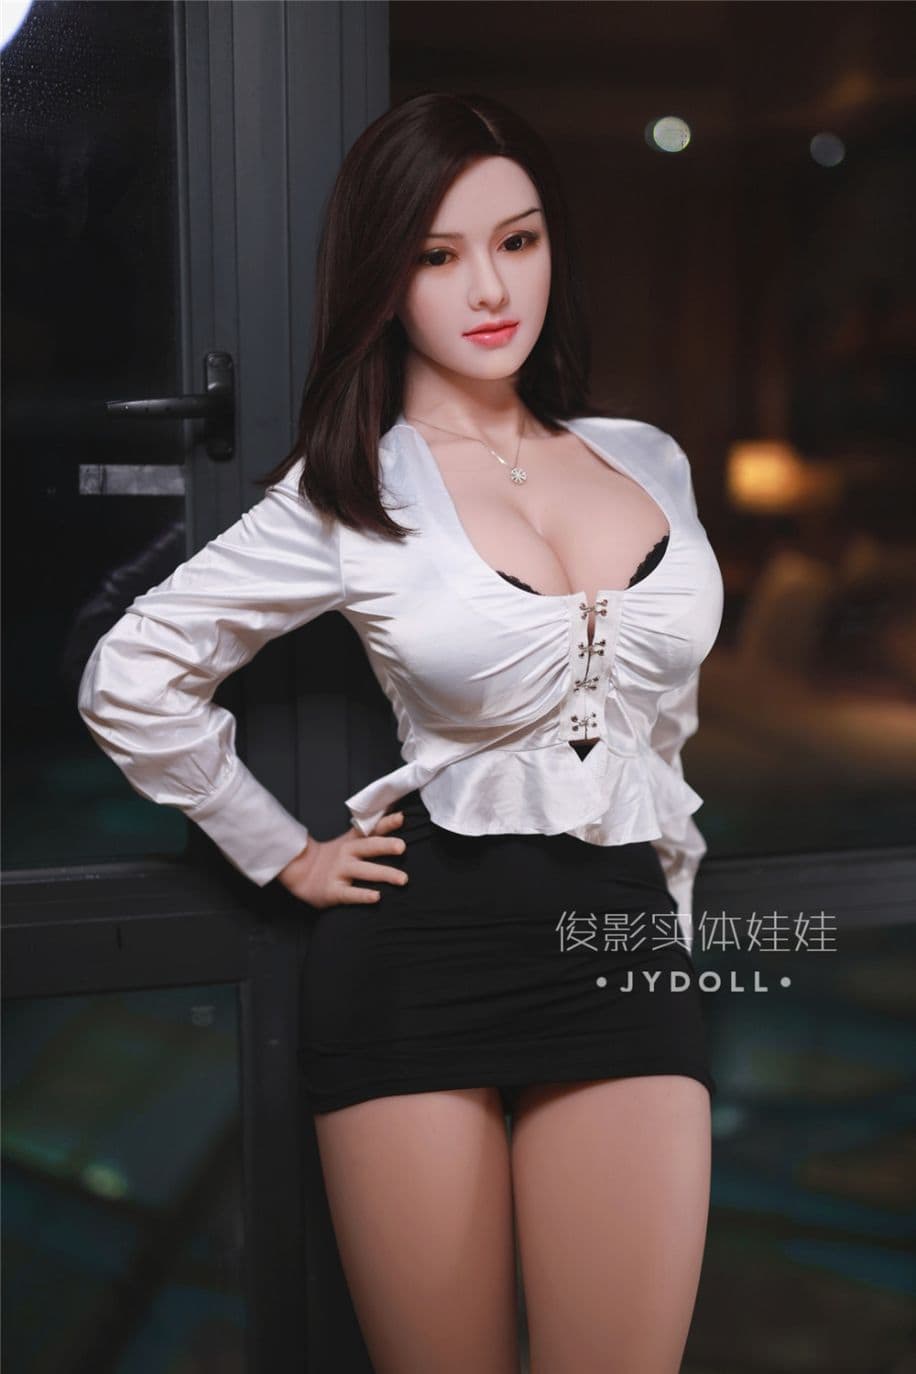 164cm Realistic Sex Doll JY Doll - Pippa